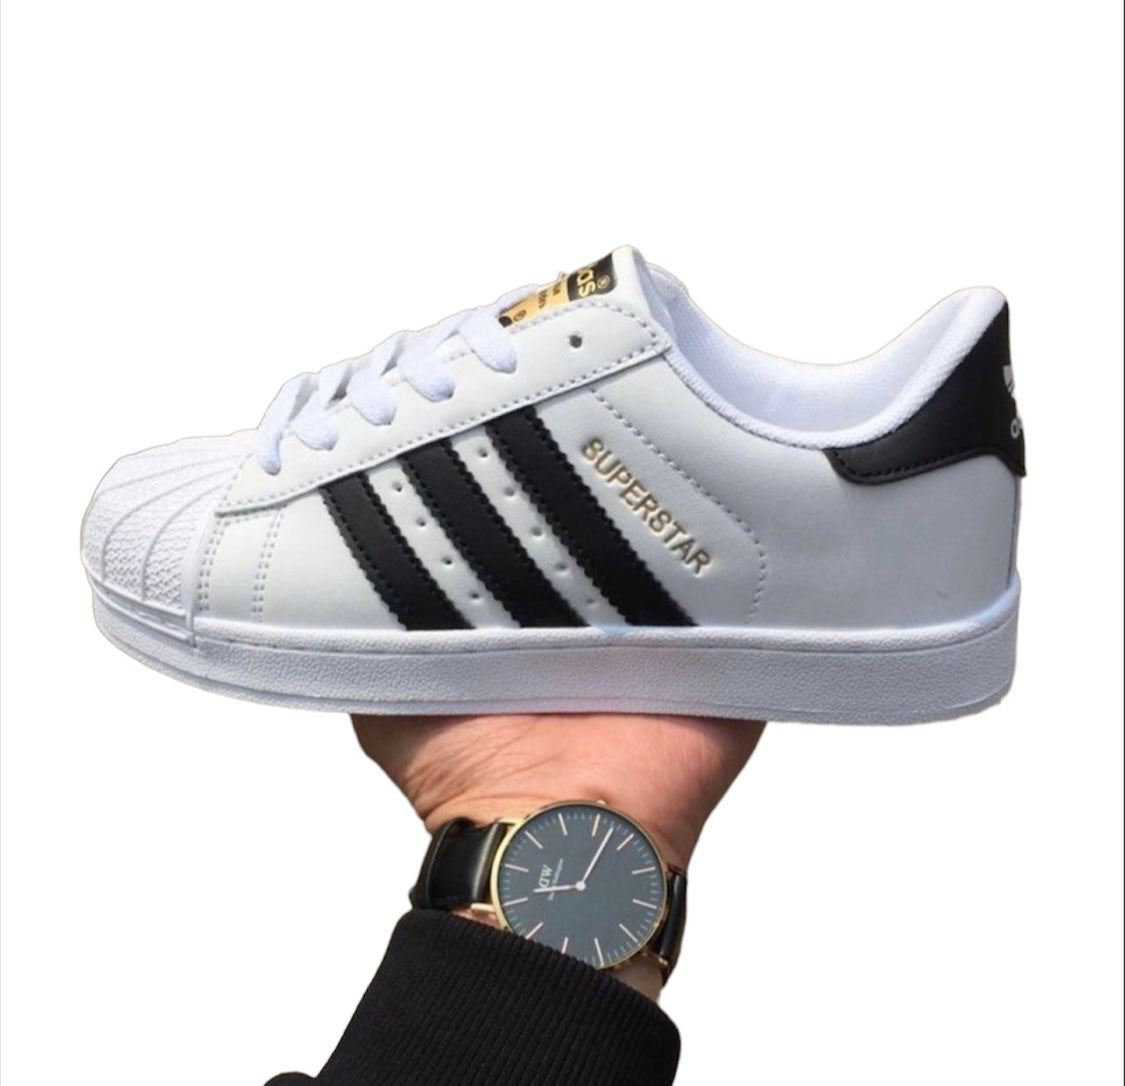 Adidas Schuhe – avshin